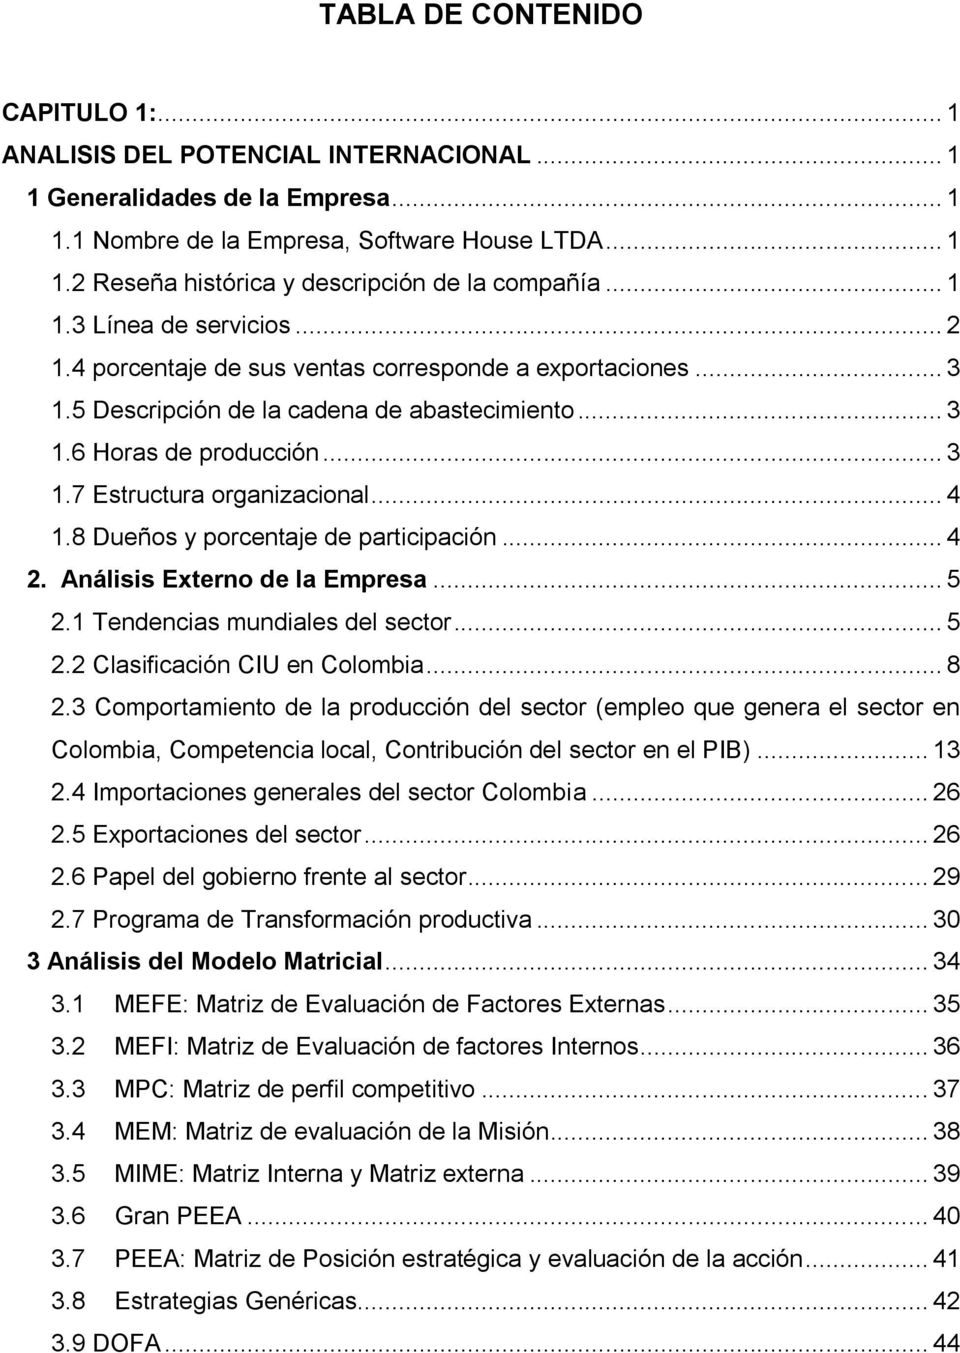 .. 4 1.8 Dueños y porcentaje de participación... 4 2. Análisis Externo de la Empresa... 5 2.1 Tendencias mundiales del sector... 5 2.2 Clasificación CIU en Colombia... 8 2.